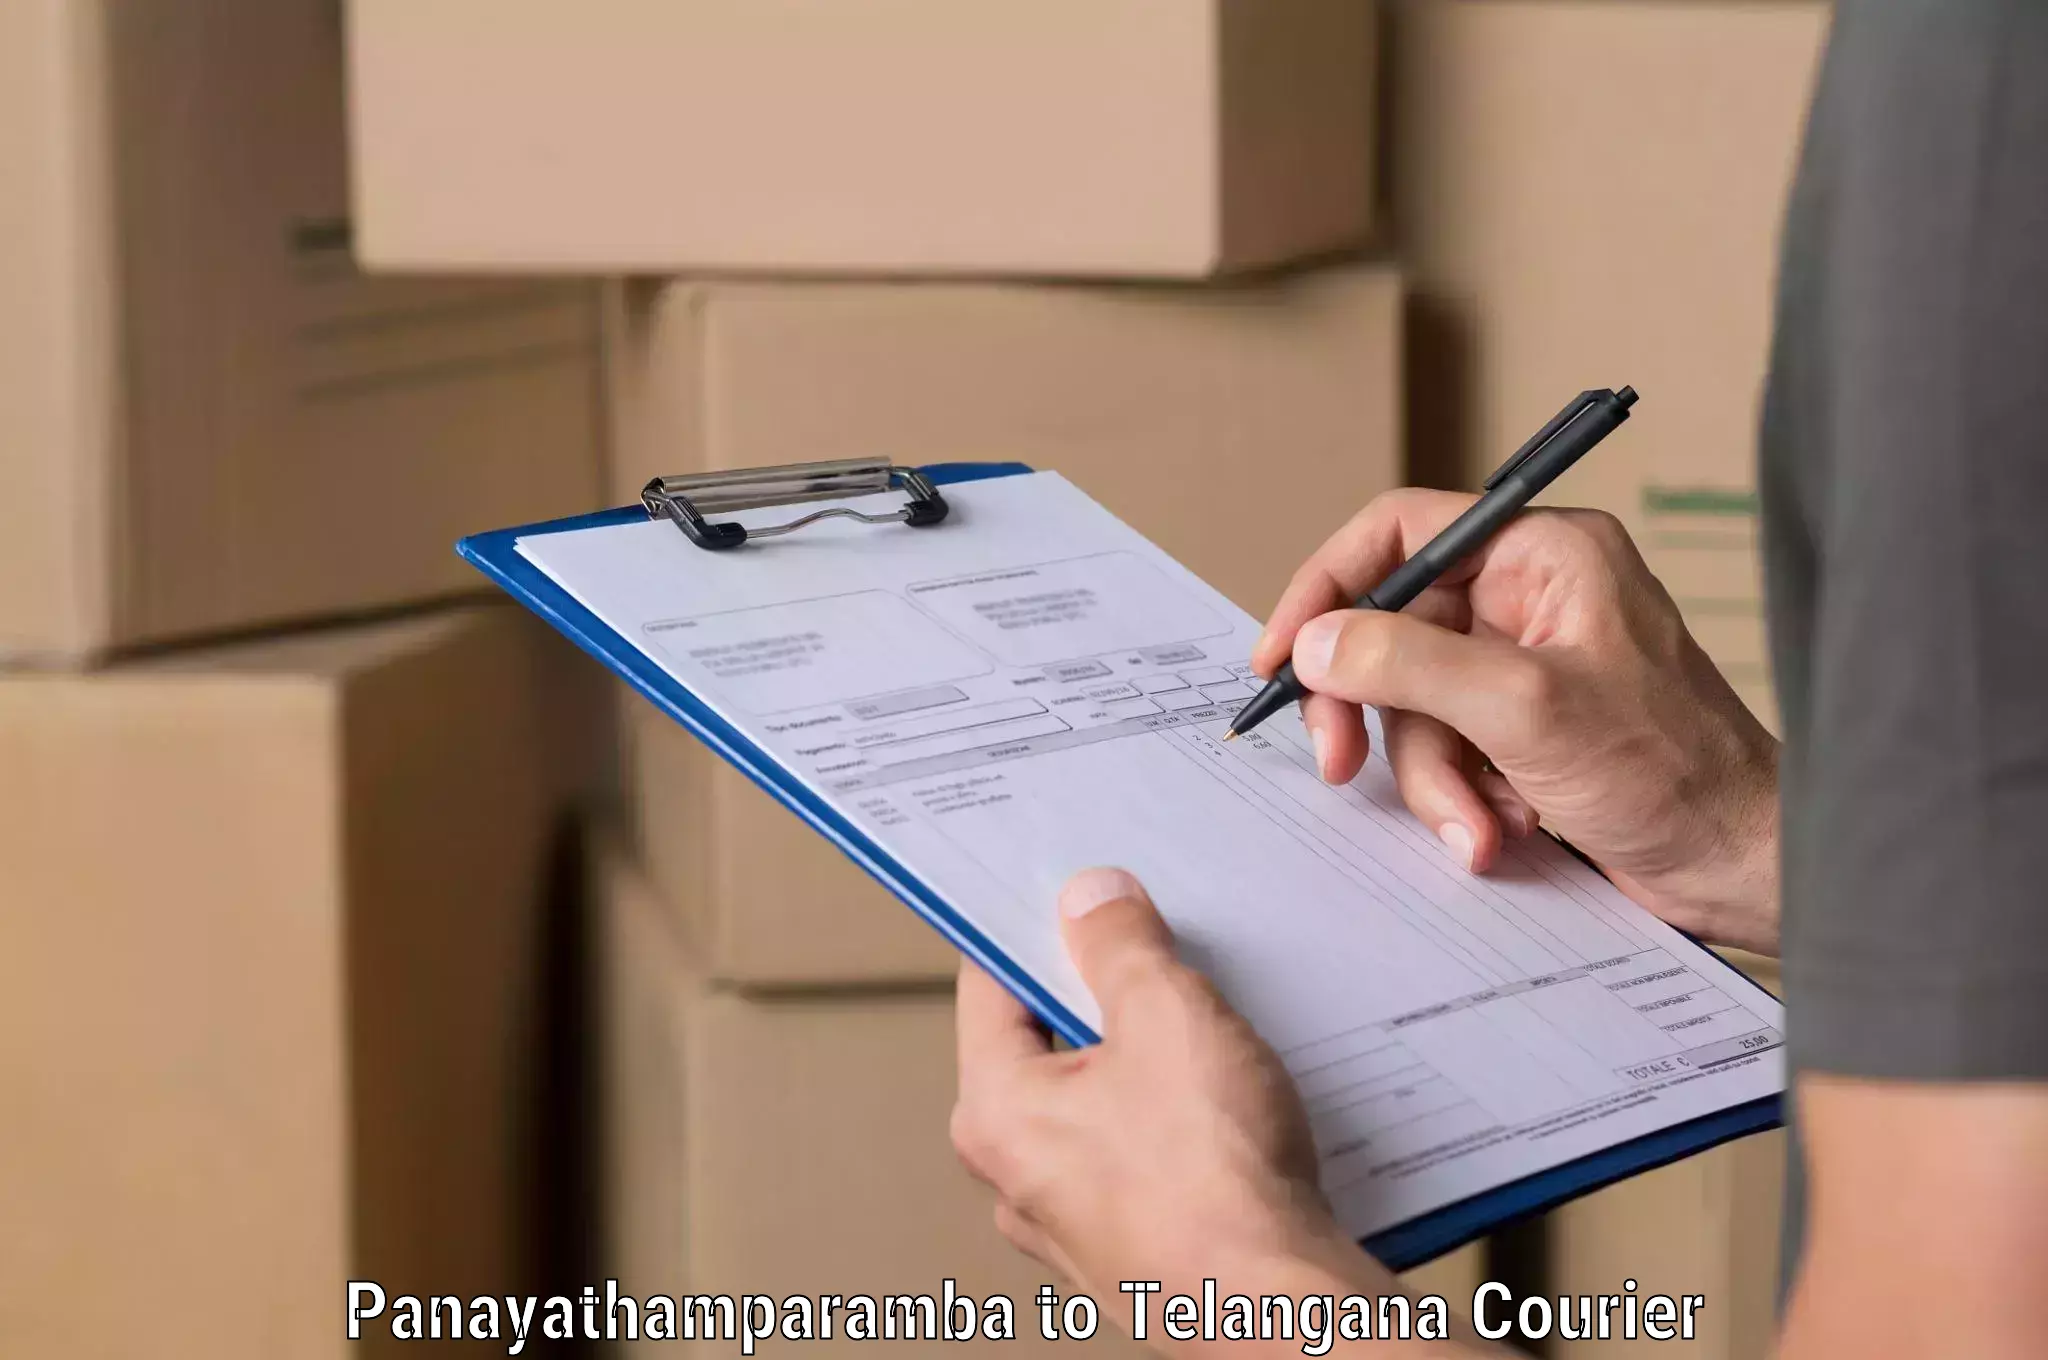 Efficient order fulfillment Panayathamparamba to Bodhan